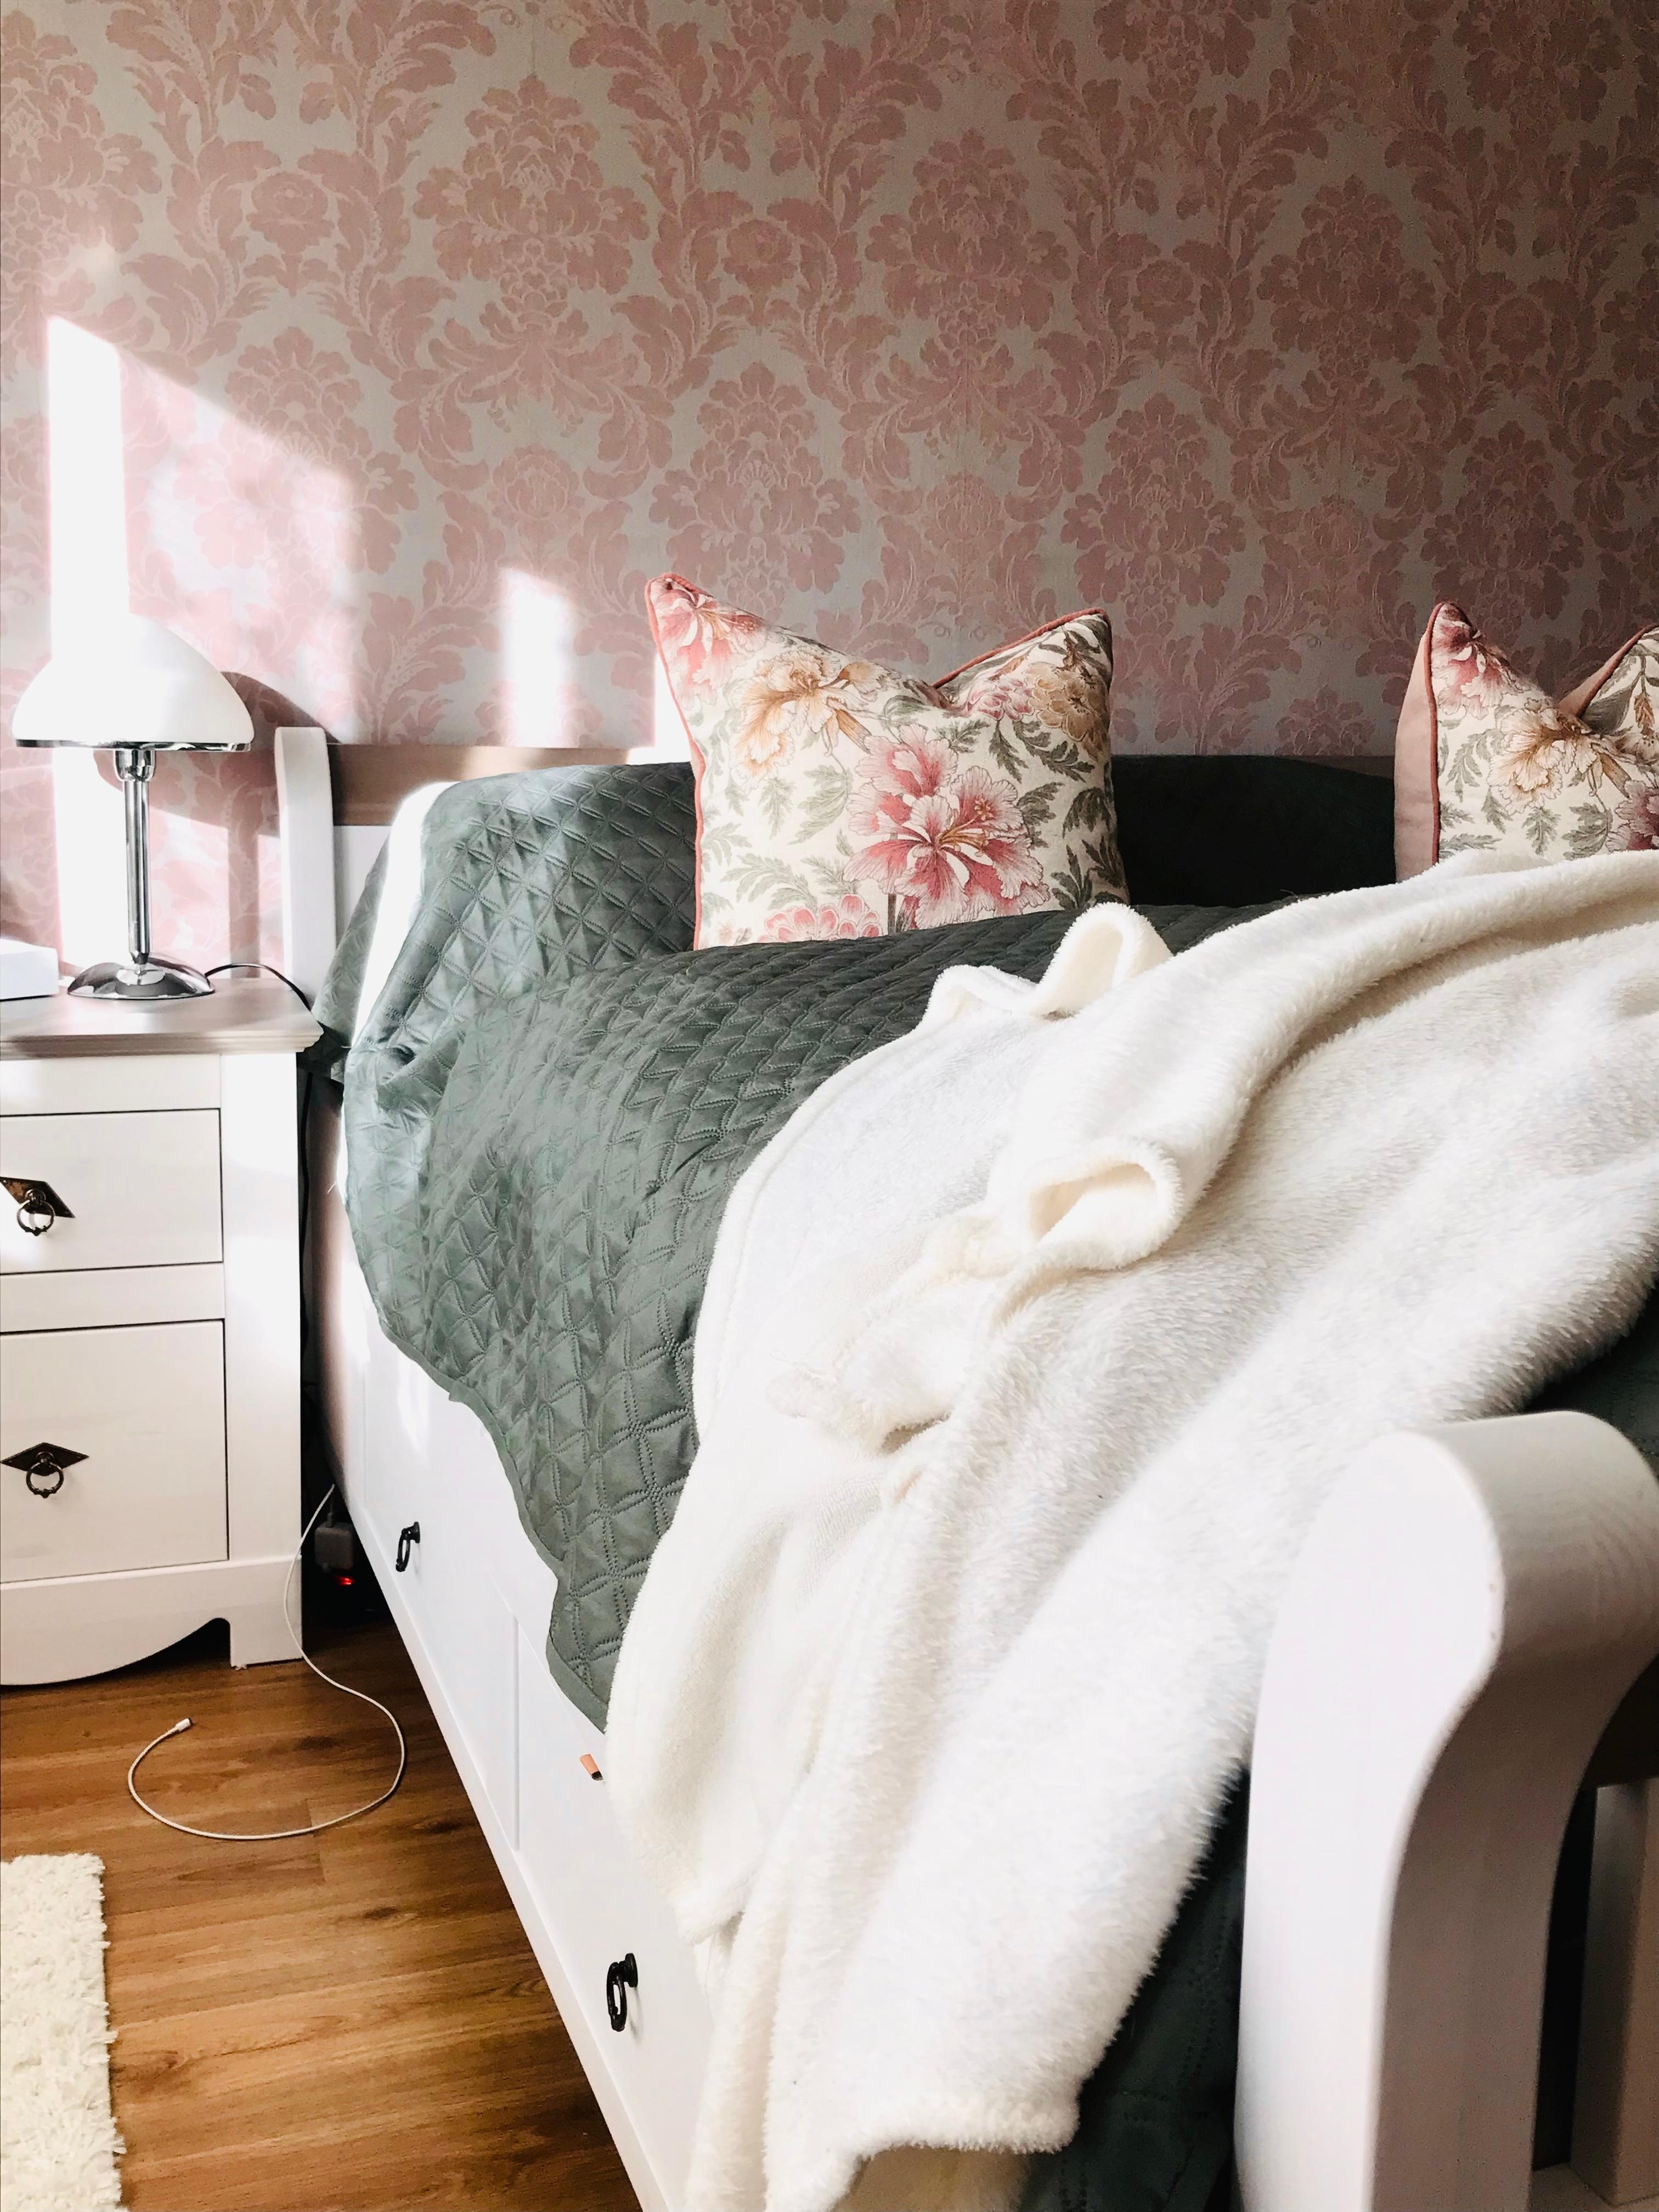 Schlafzimmer mit Sonnenschein 🛏
#bett #bedroom #cozyhome #sunshine #happy #kissen #tagesdecke #nachttisch #tapete